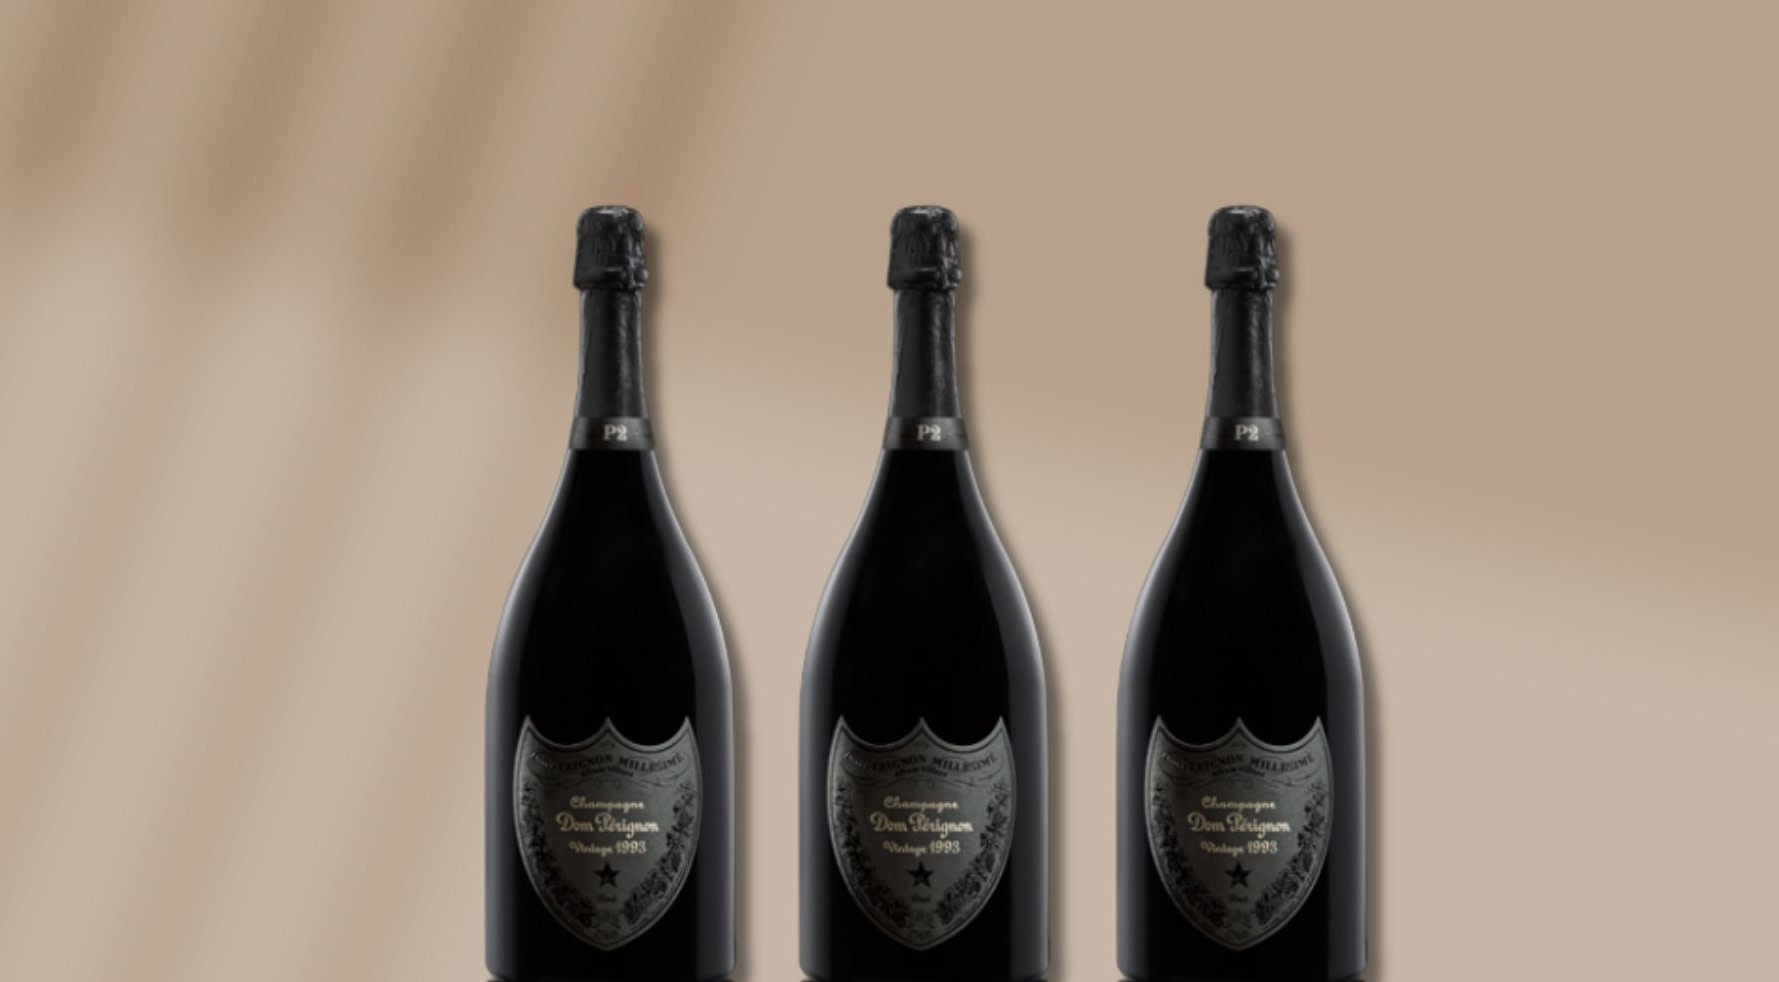 Moet & Chandon 2013 Vintage Dom Perignon Brut Champagne